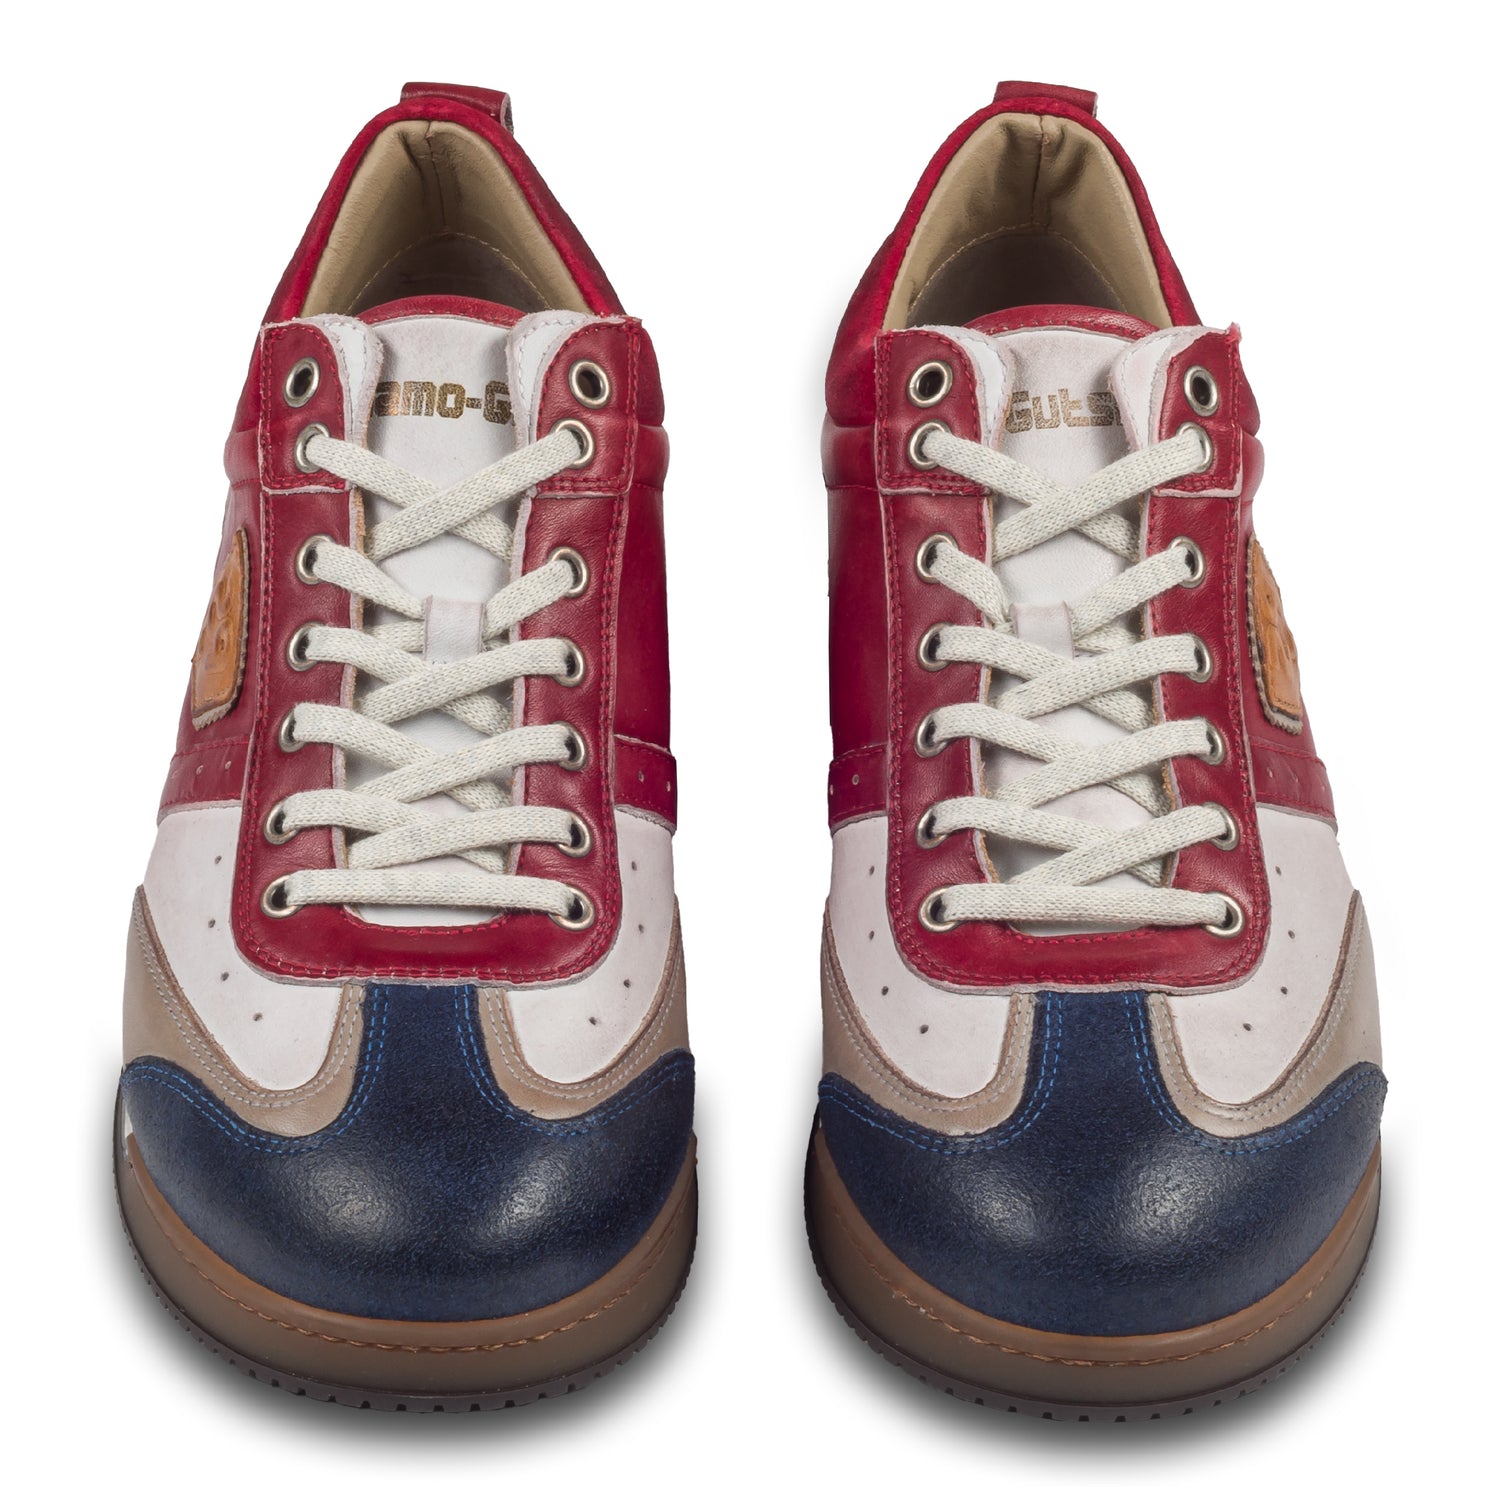 KAMO-GUTSU Herren Leder Sneaker rot / weiß / blau / grau, Retro-Optik. Modell SCUDO-005 rosso combi. Handgefertigt in Italien. Paarweise Ansicht von vorne.  